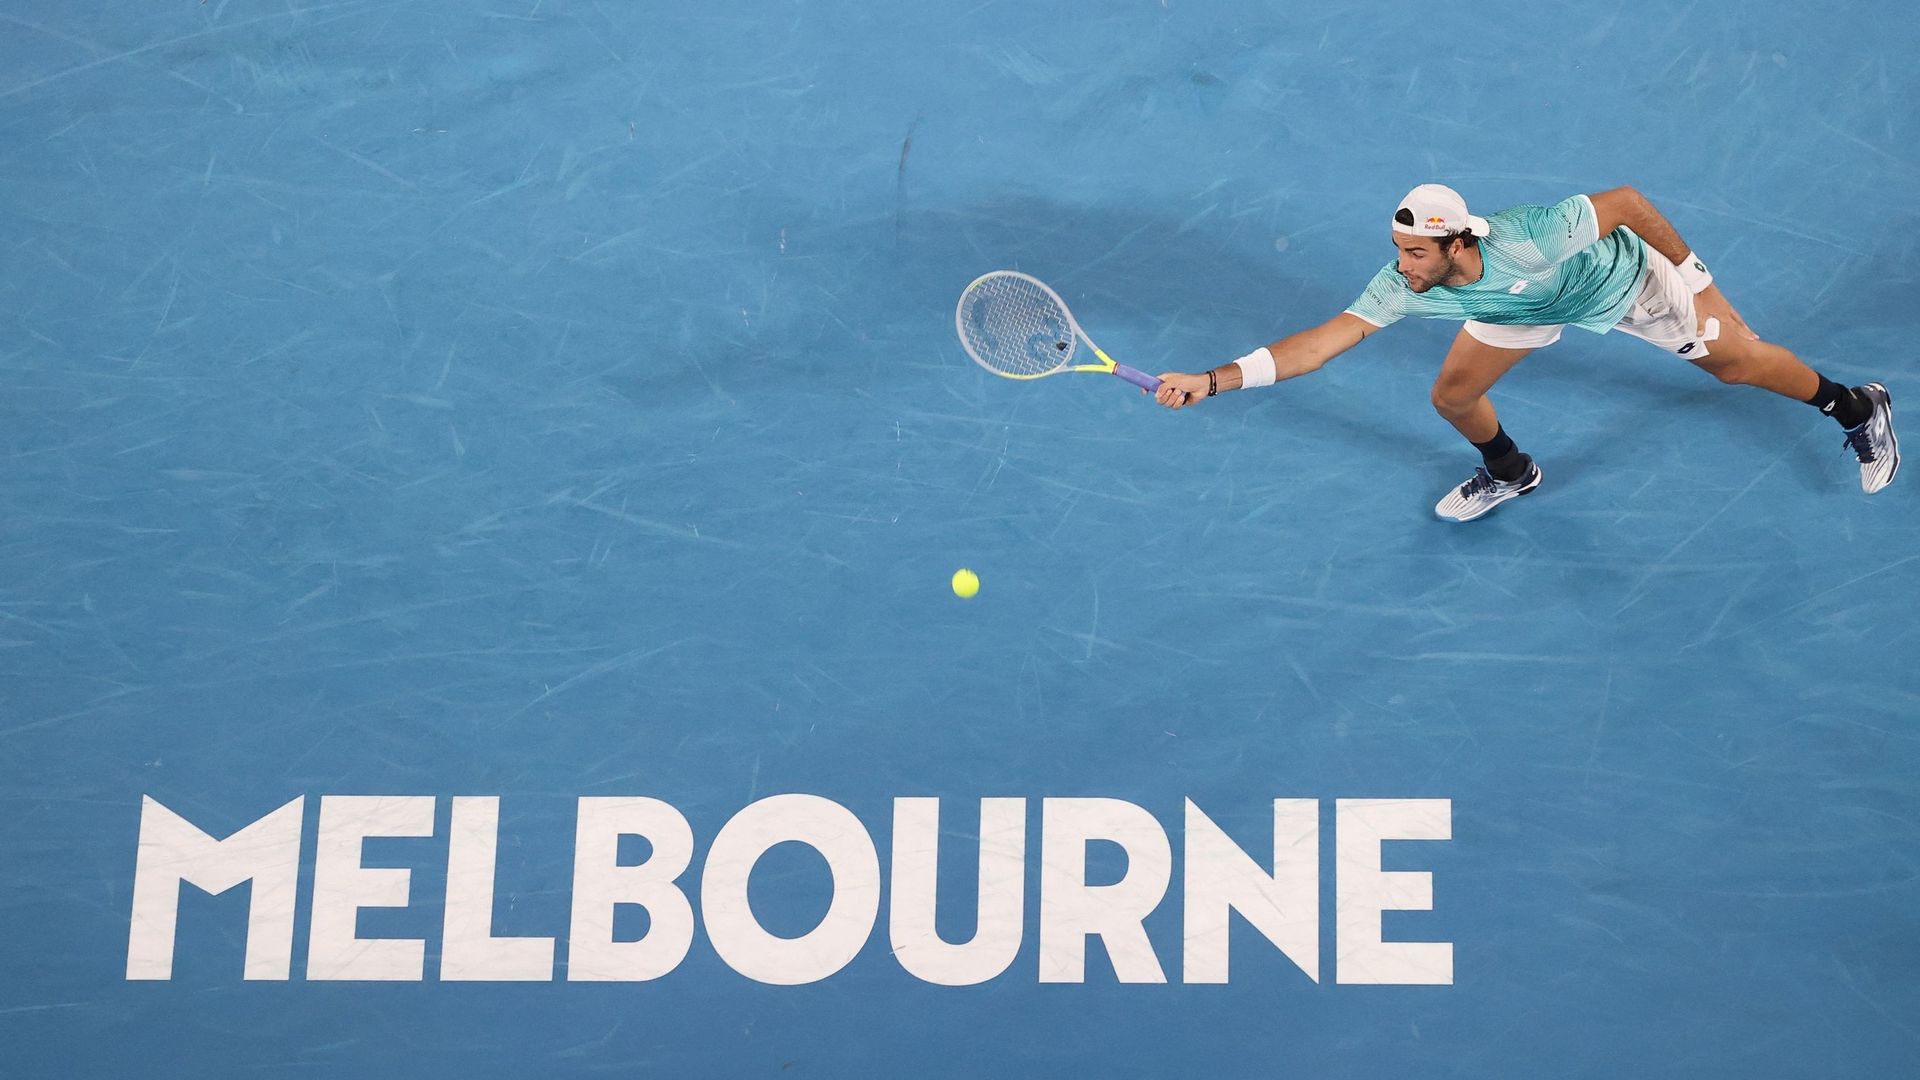 Matteo Berrettini et les autres retrouveront les tournois australiens en janvier pour préparer l'Australian Open.